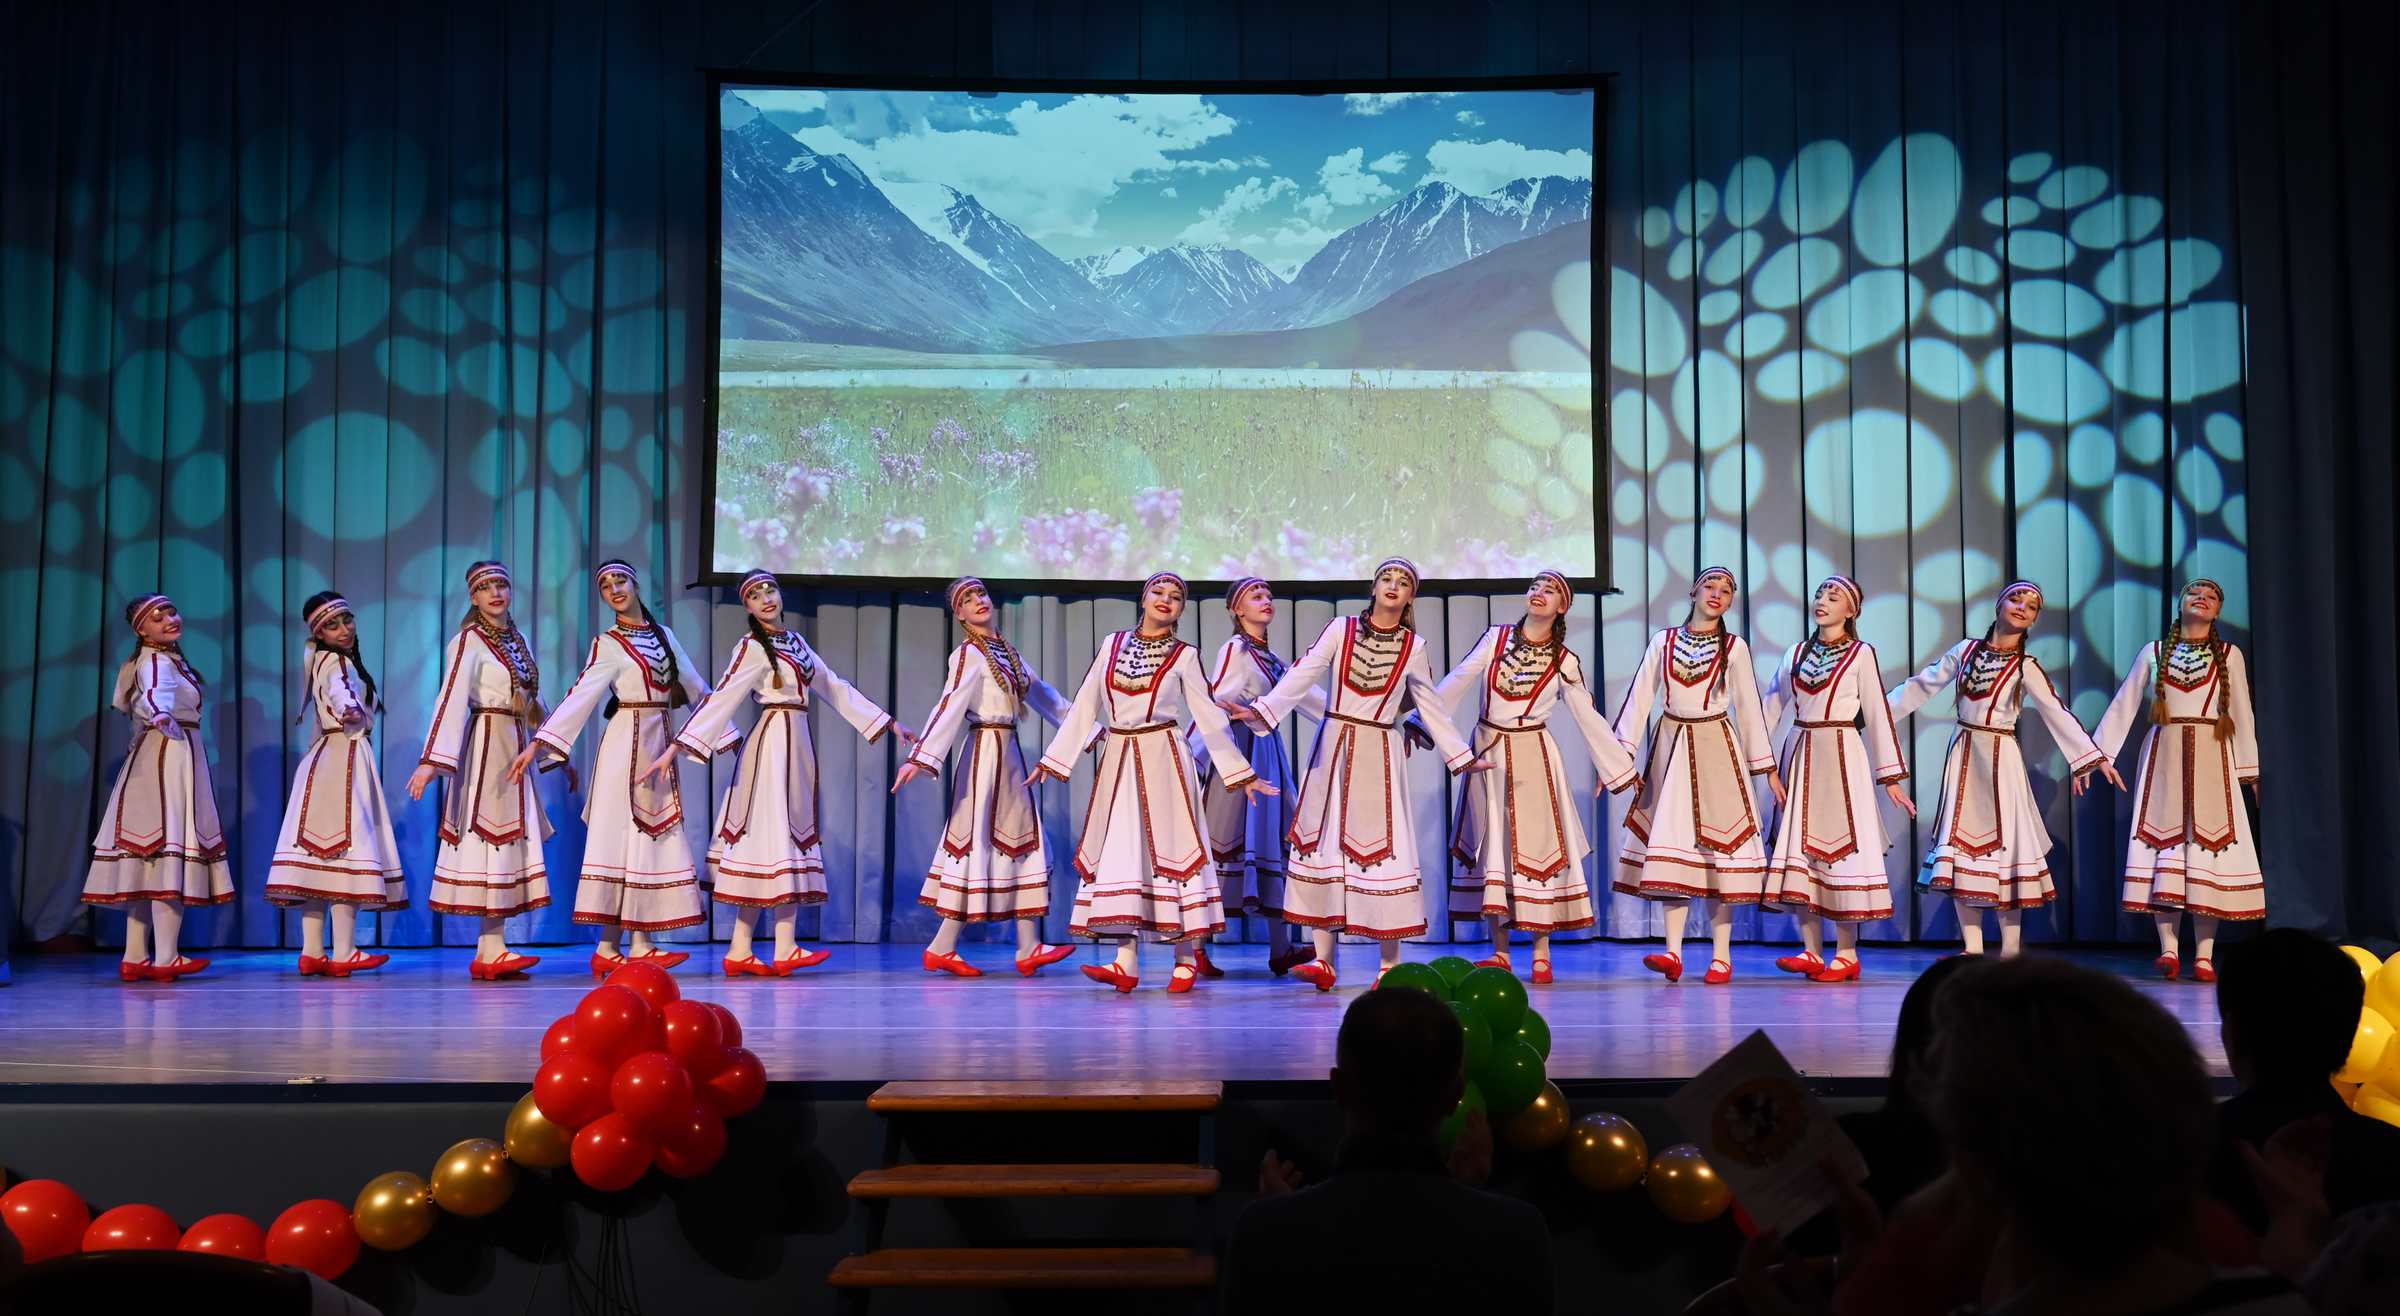 Отчётный концерт детского хореографического коллектива Солнцецвет. Танец марийских красавиц.